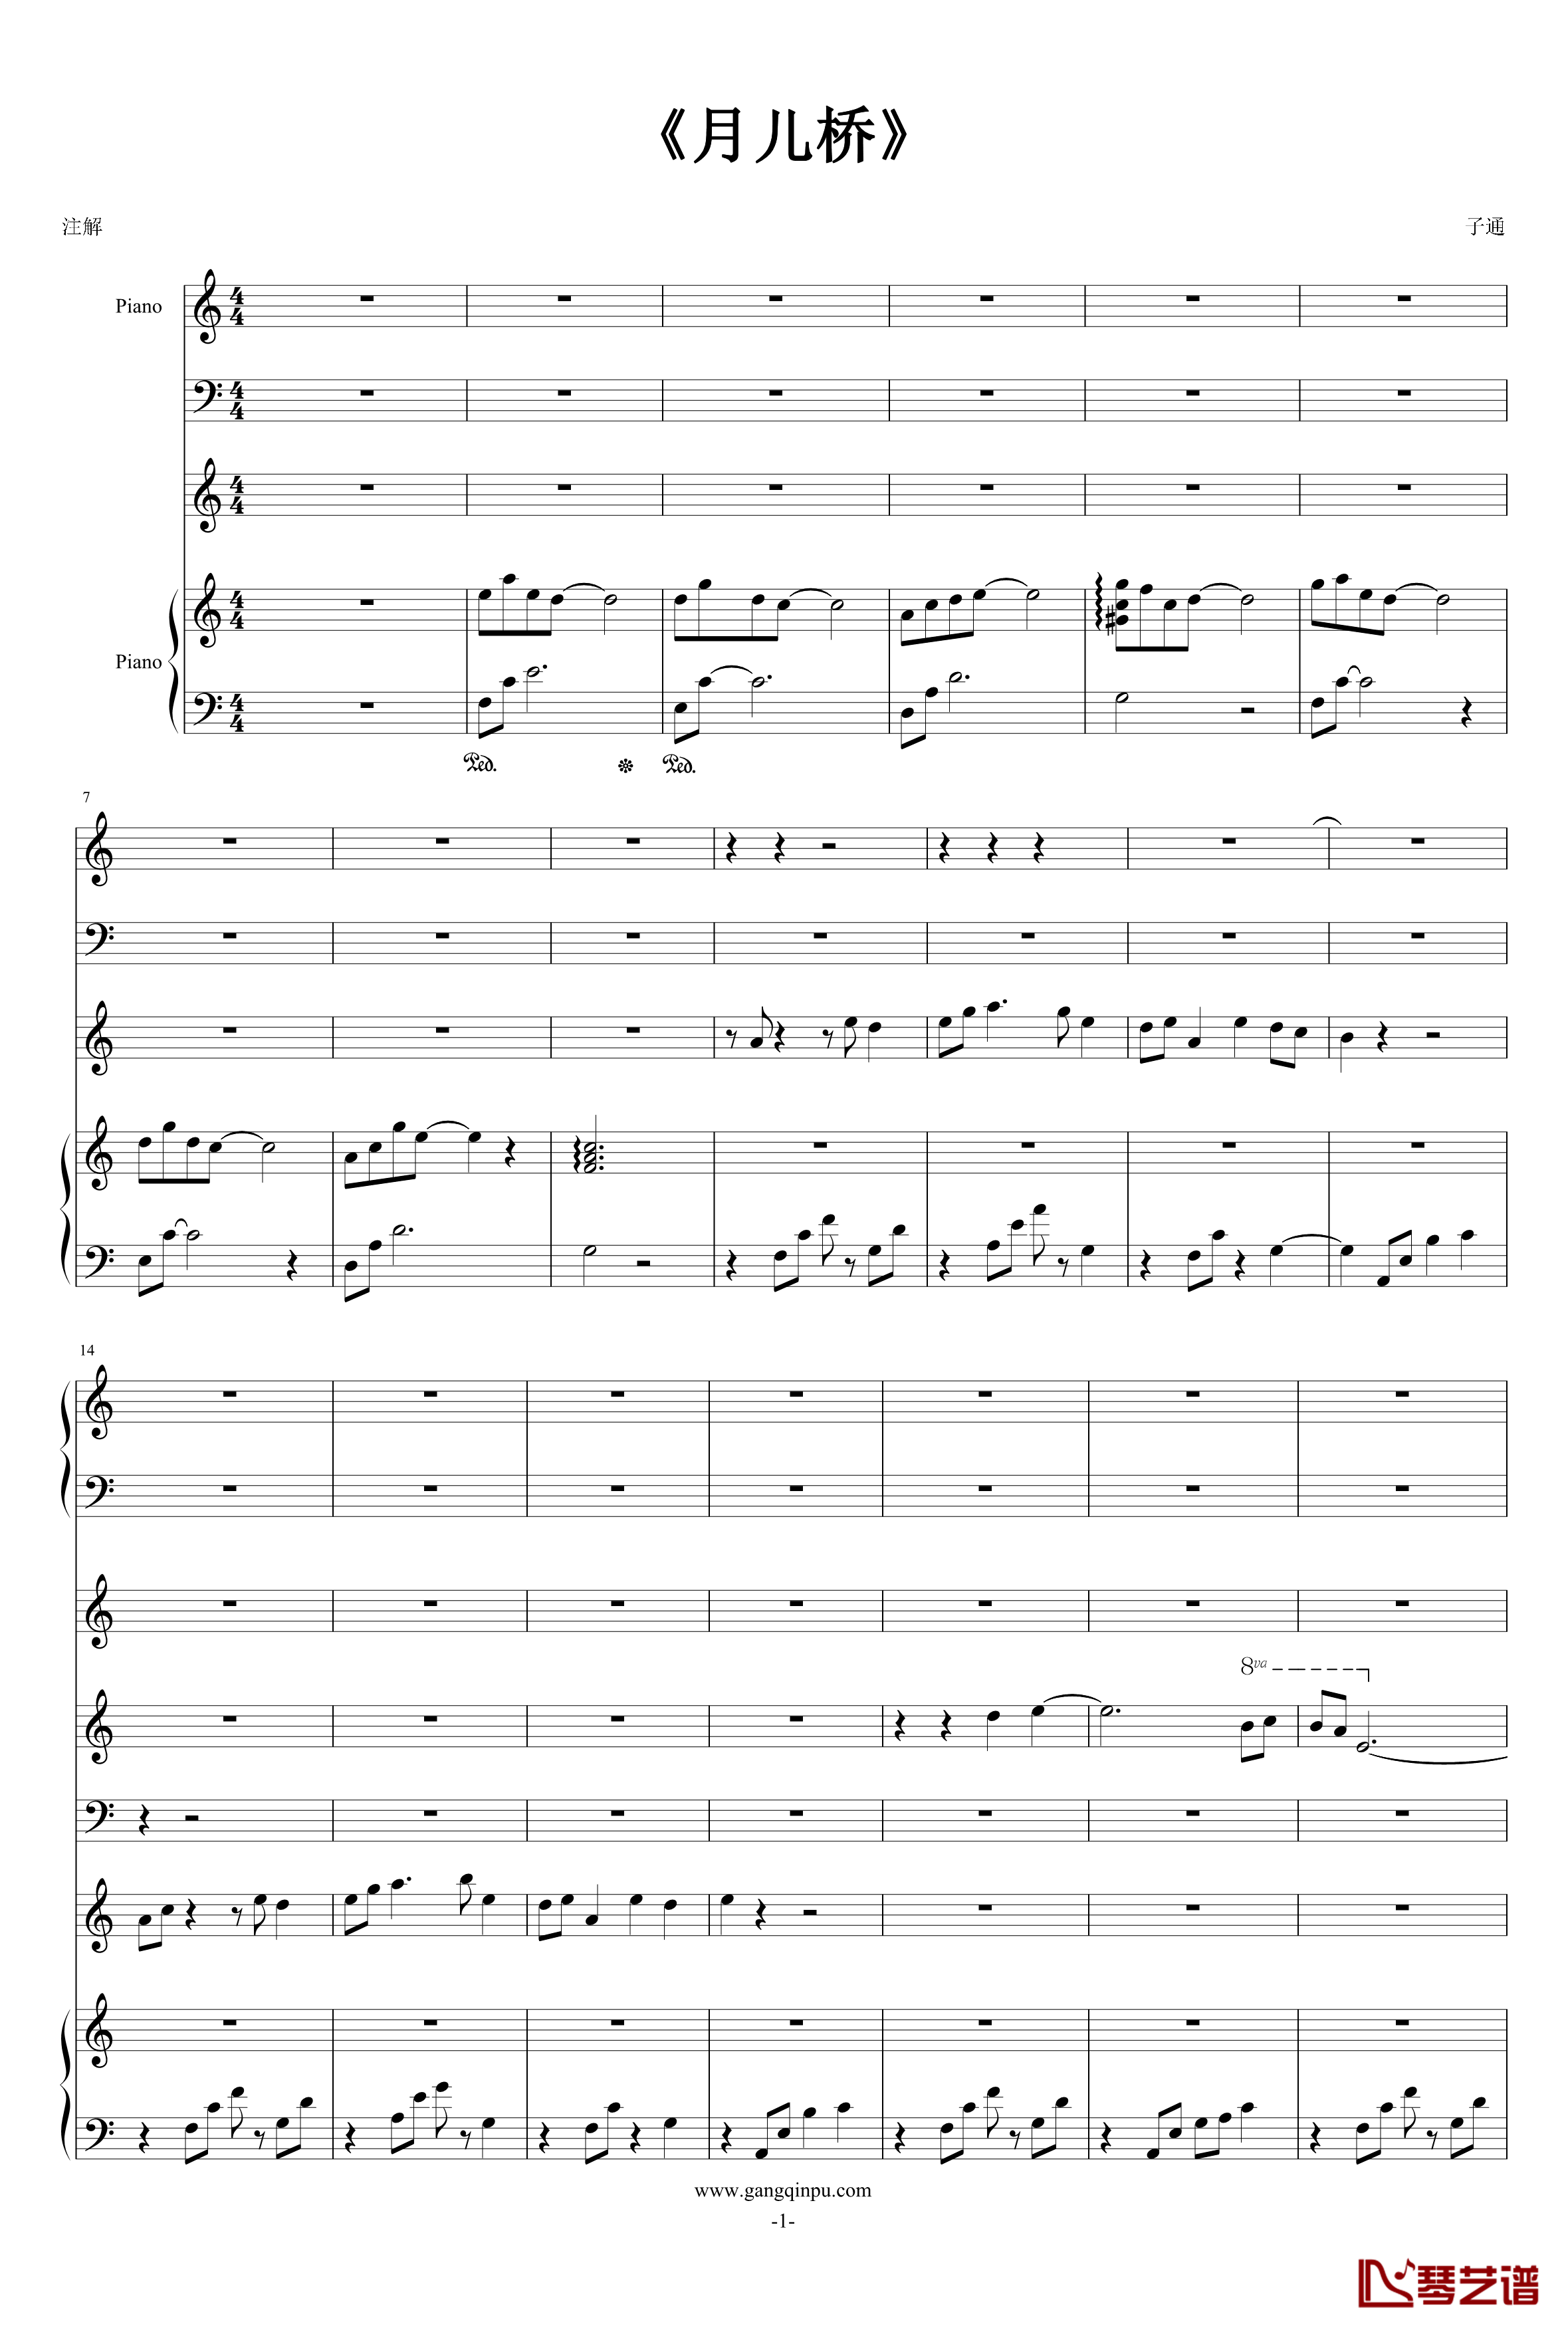 月儿桥钢琴谱-wjm6661